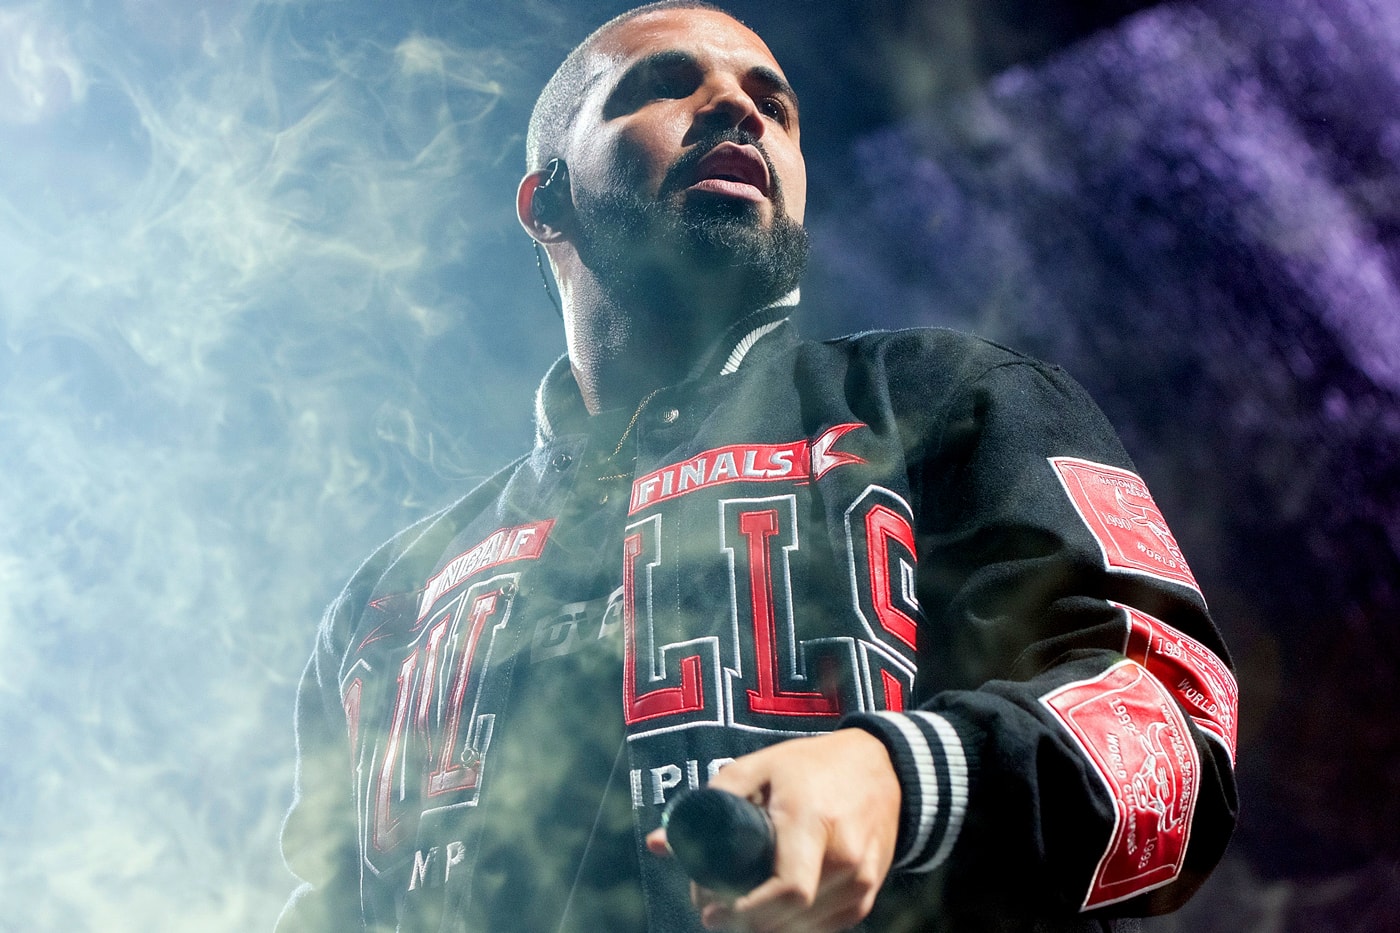 XXXTENTACION Drake Stop Speaking Patois DJ Akademiks